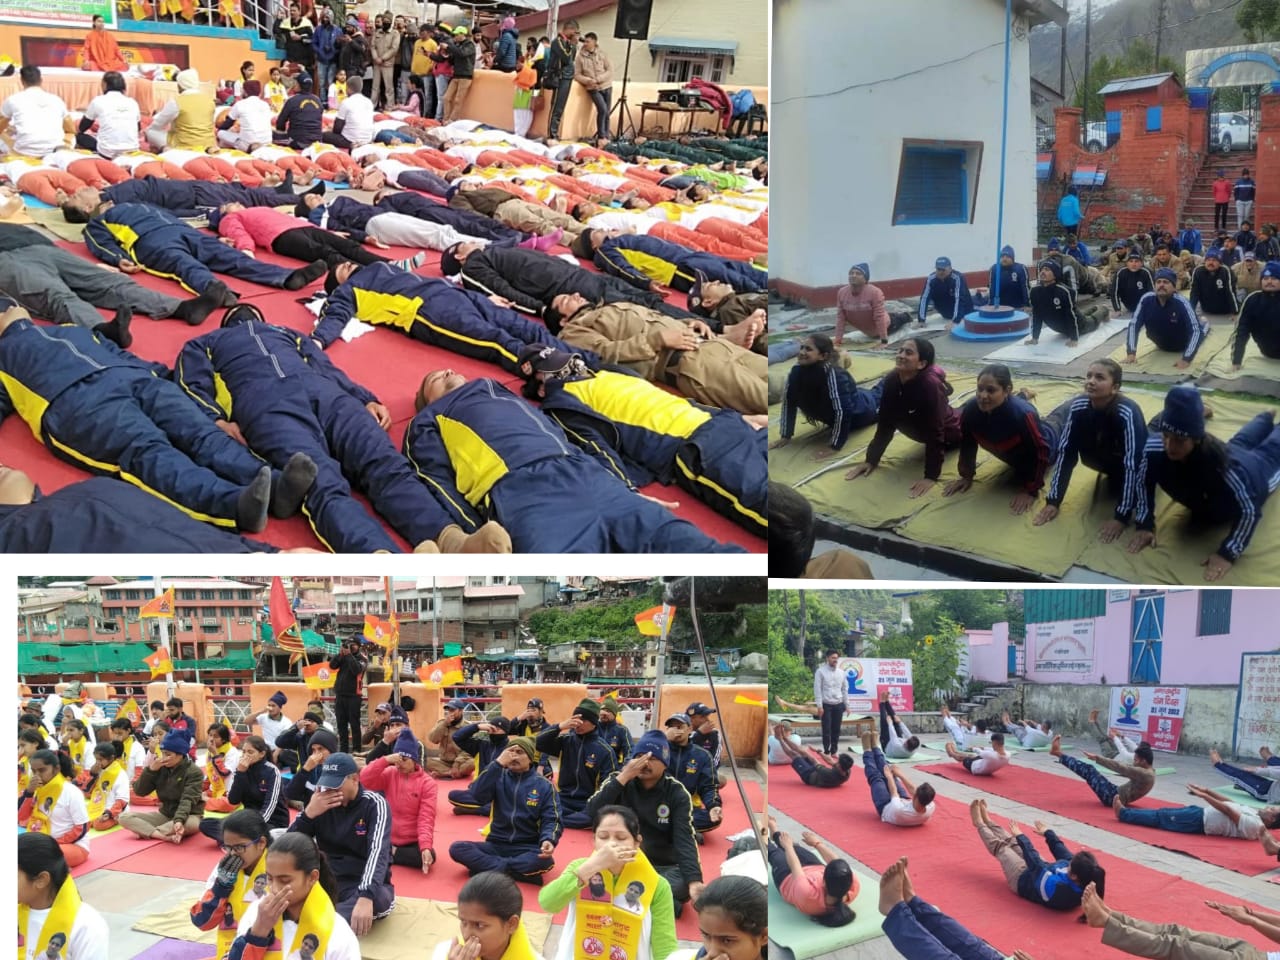 8वें अन्तर्राष्ट्रीय योग दिवस पर पुलिस लाइन गोपेश्वर सहित जनपद के सभी थाना चौकियों में किया गया योग शिविर का आयोजन